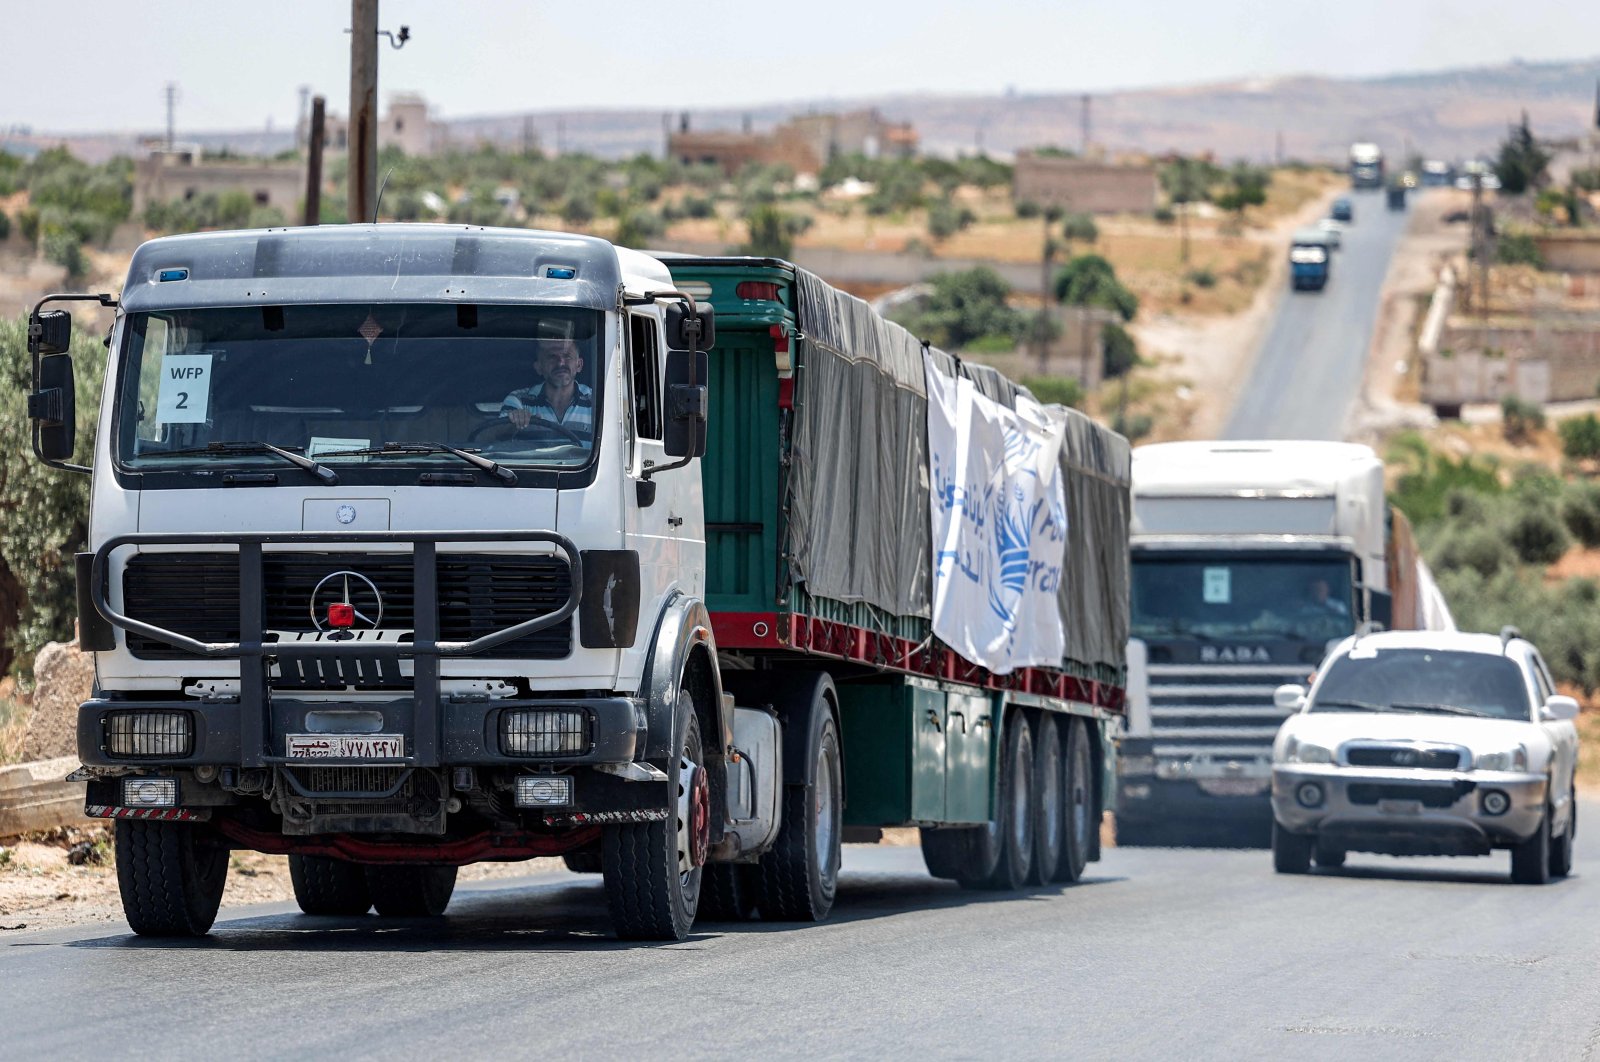 Bantuan PBB memasuki Suriah yang dikuasai oposisi untuk pertama kalinya sejak gempa bumi